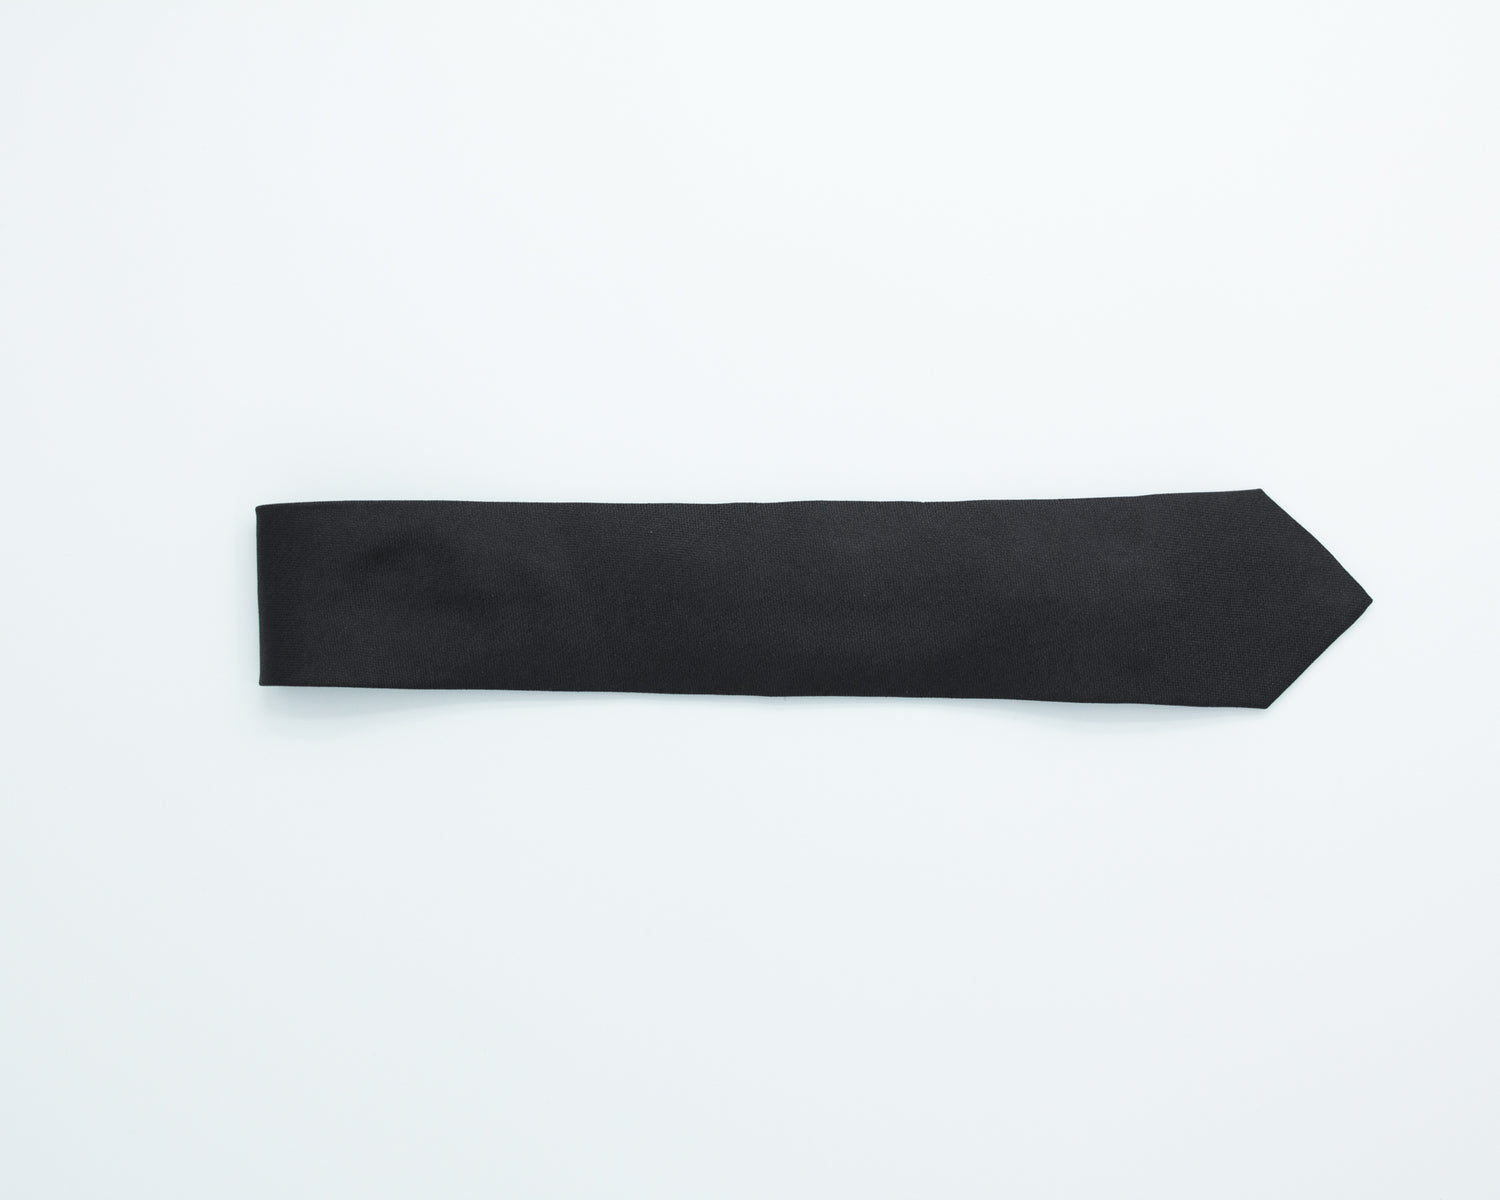 Turo Fine Grenadine Silk Tie in Black (8402339135818)